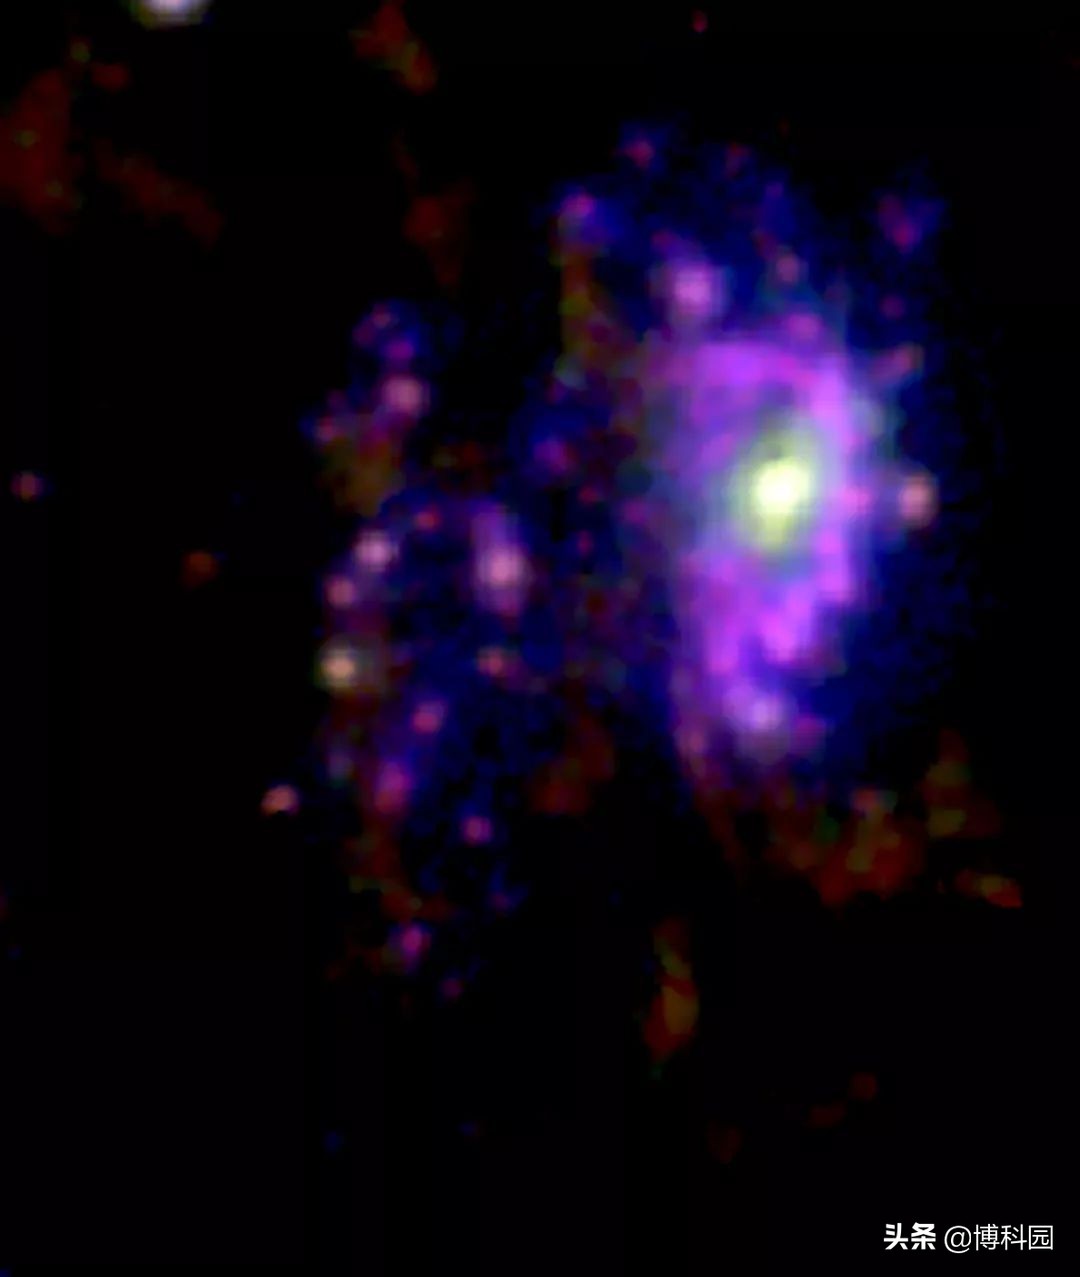 原来是超大质量黑洞“杀死”了这只水母星系